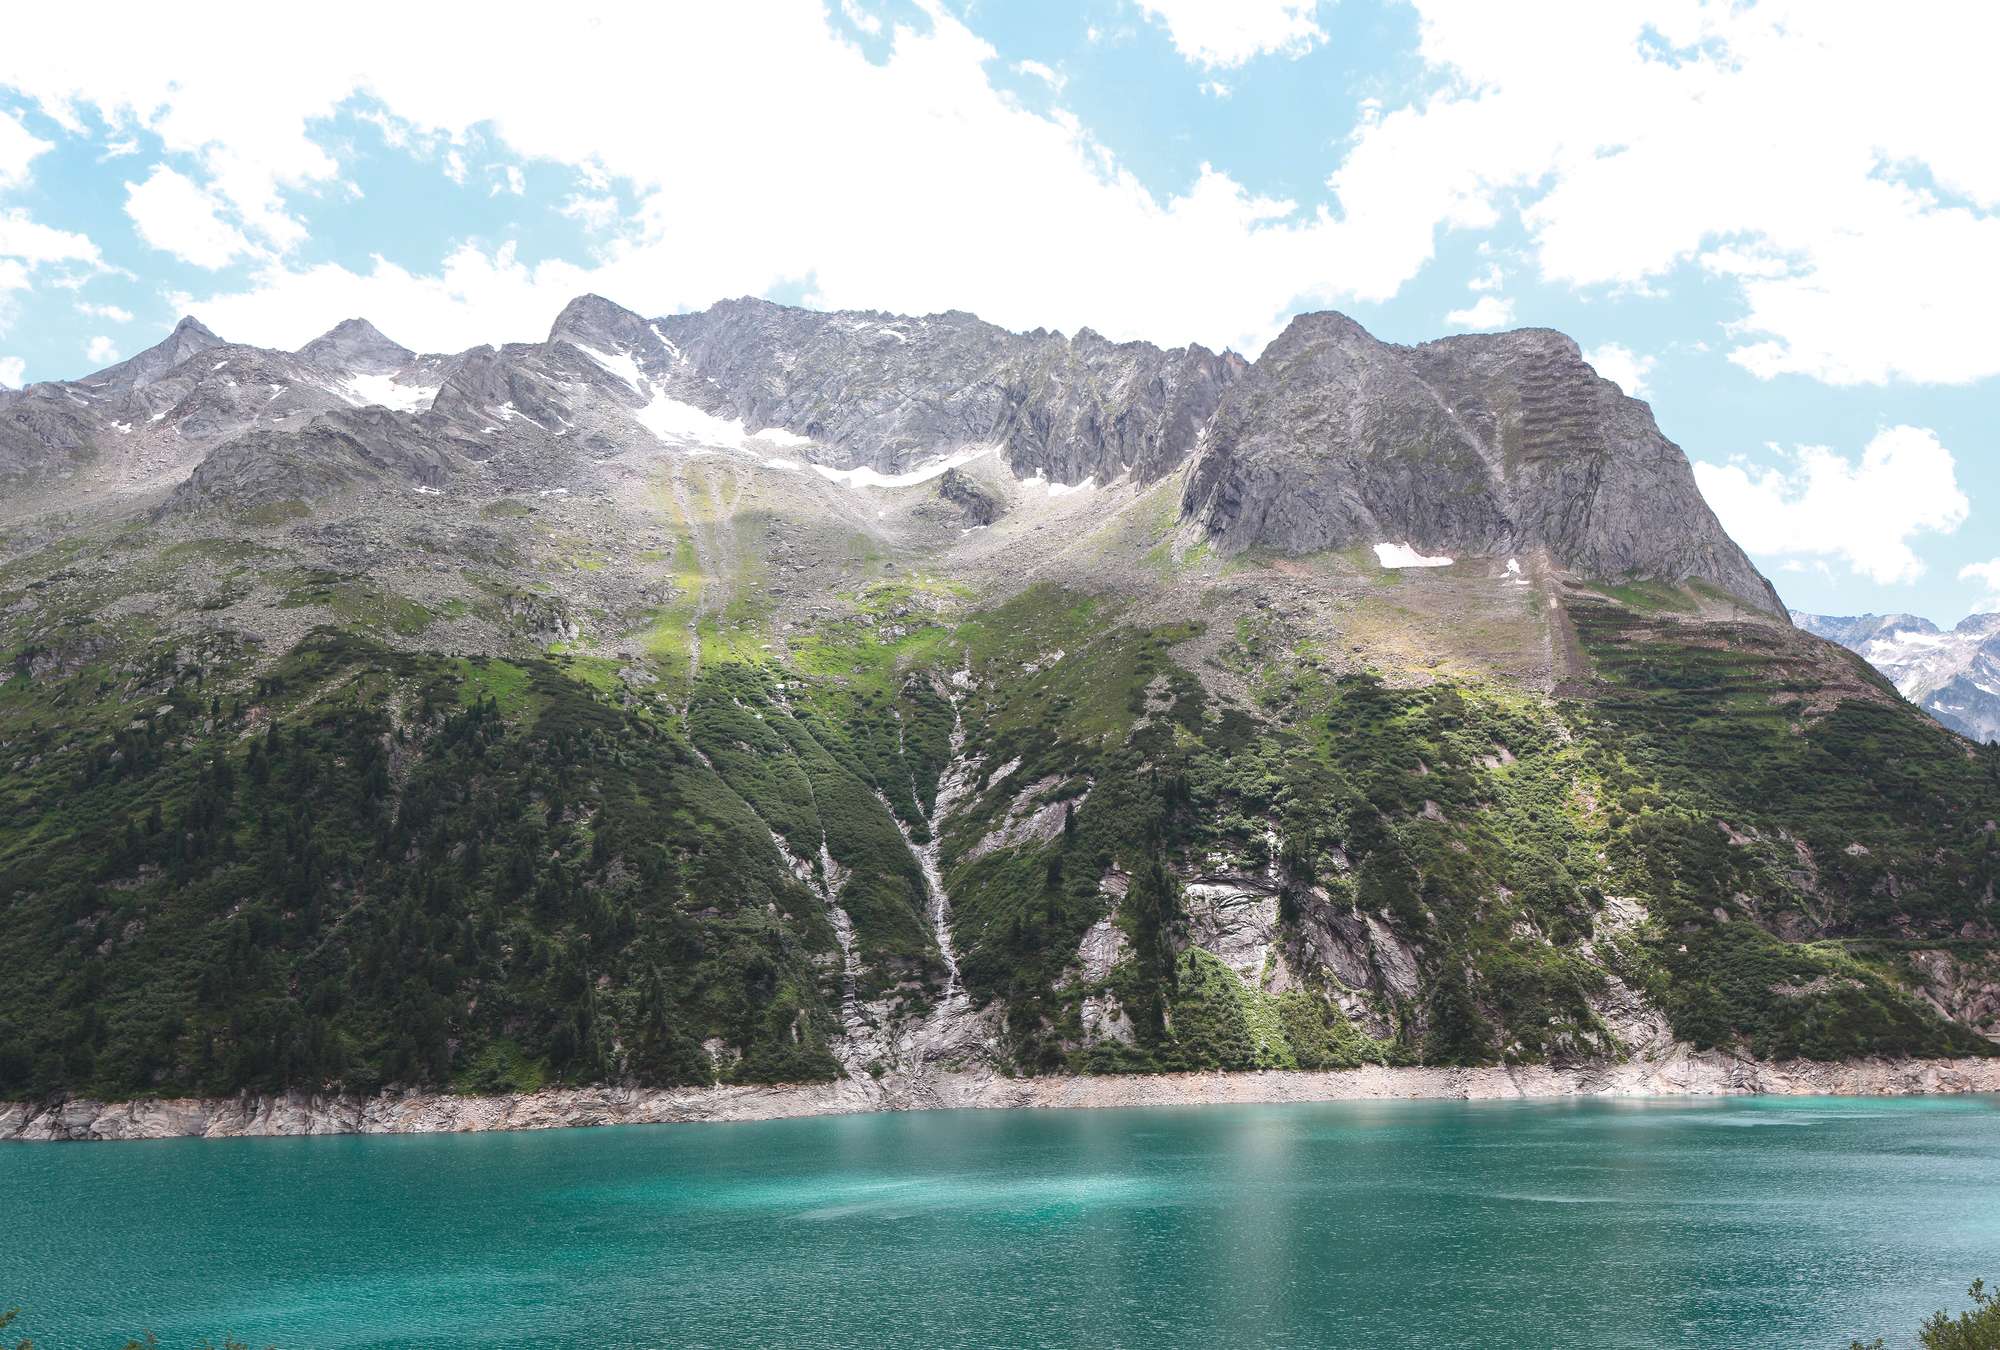             Papier peint panoramique paysage de montagne avec lac alpin
        